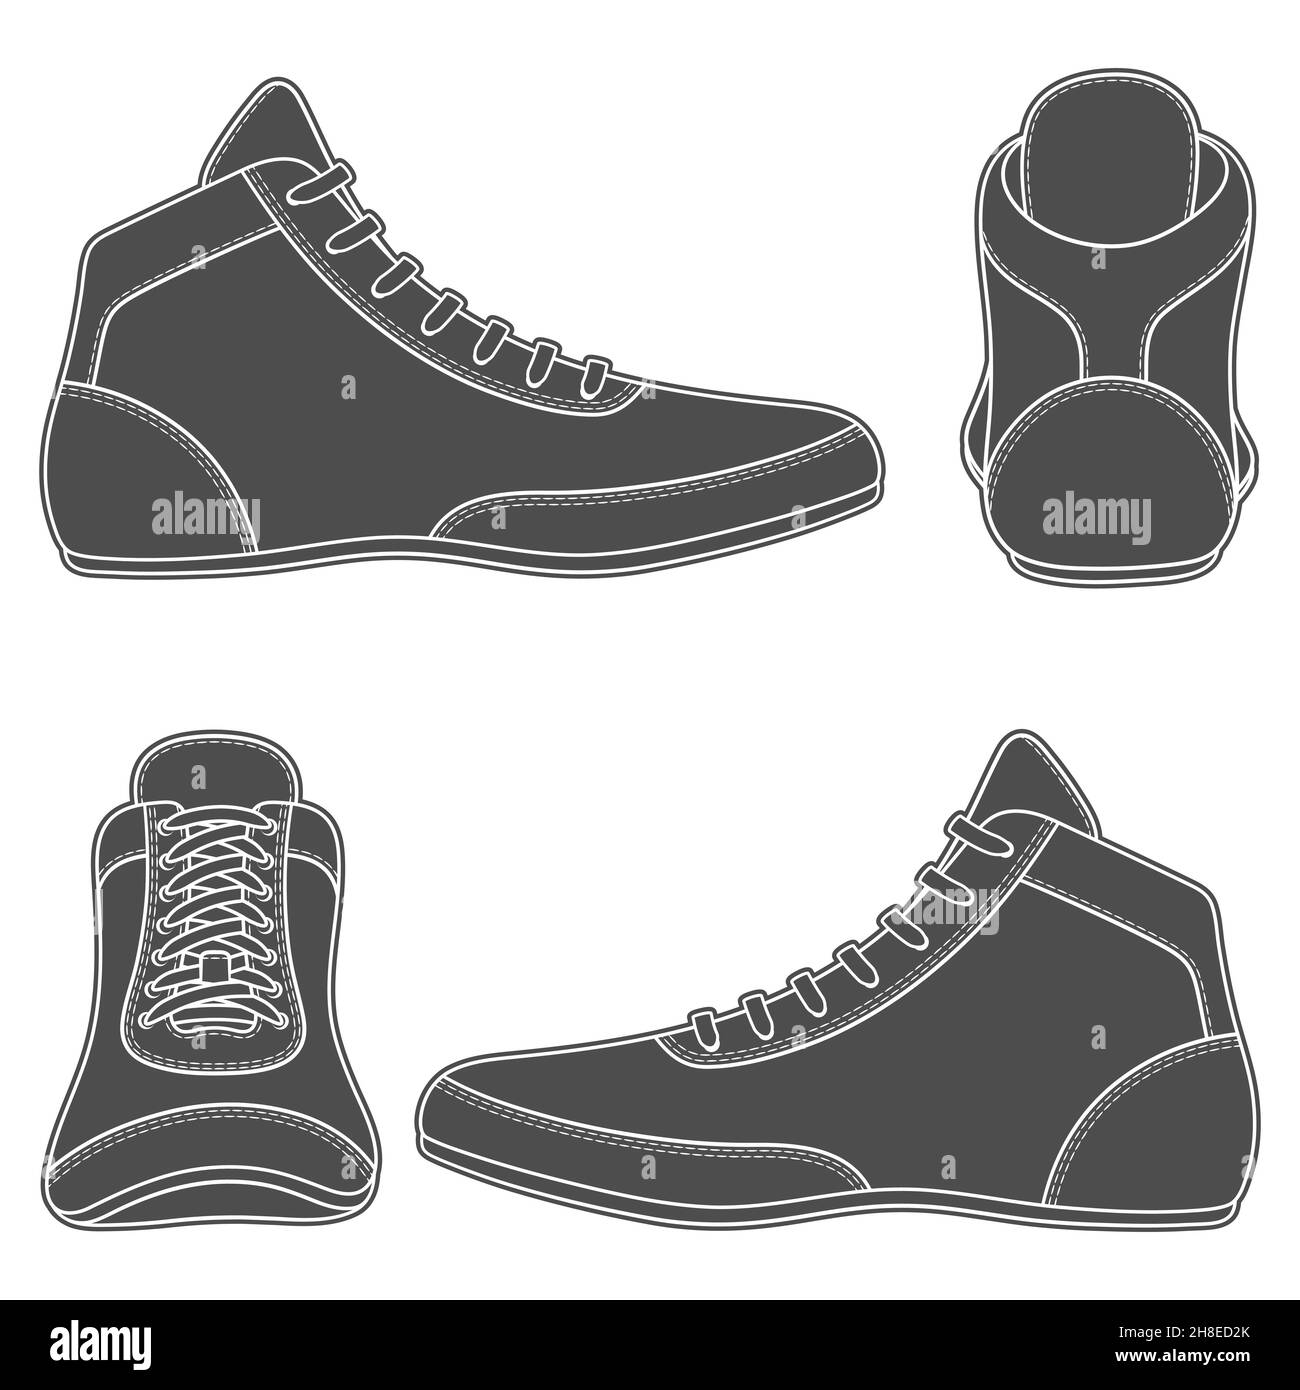 Set mit schwarz-weißen Illustrationen mit Wrestling-Schuhen, Sportschuhen. Isolierte Vektorobjekte auf weißem Hintergrund. Stock Vektor